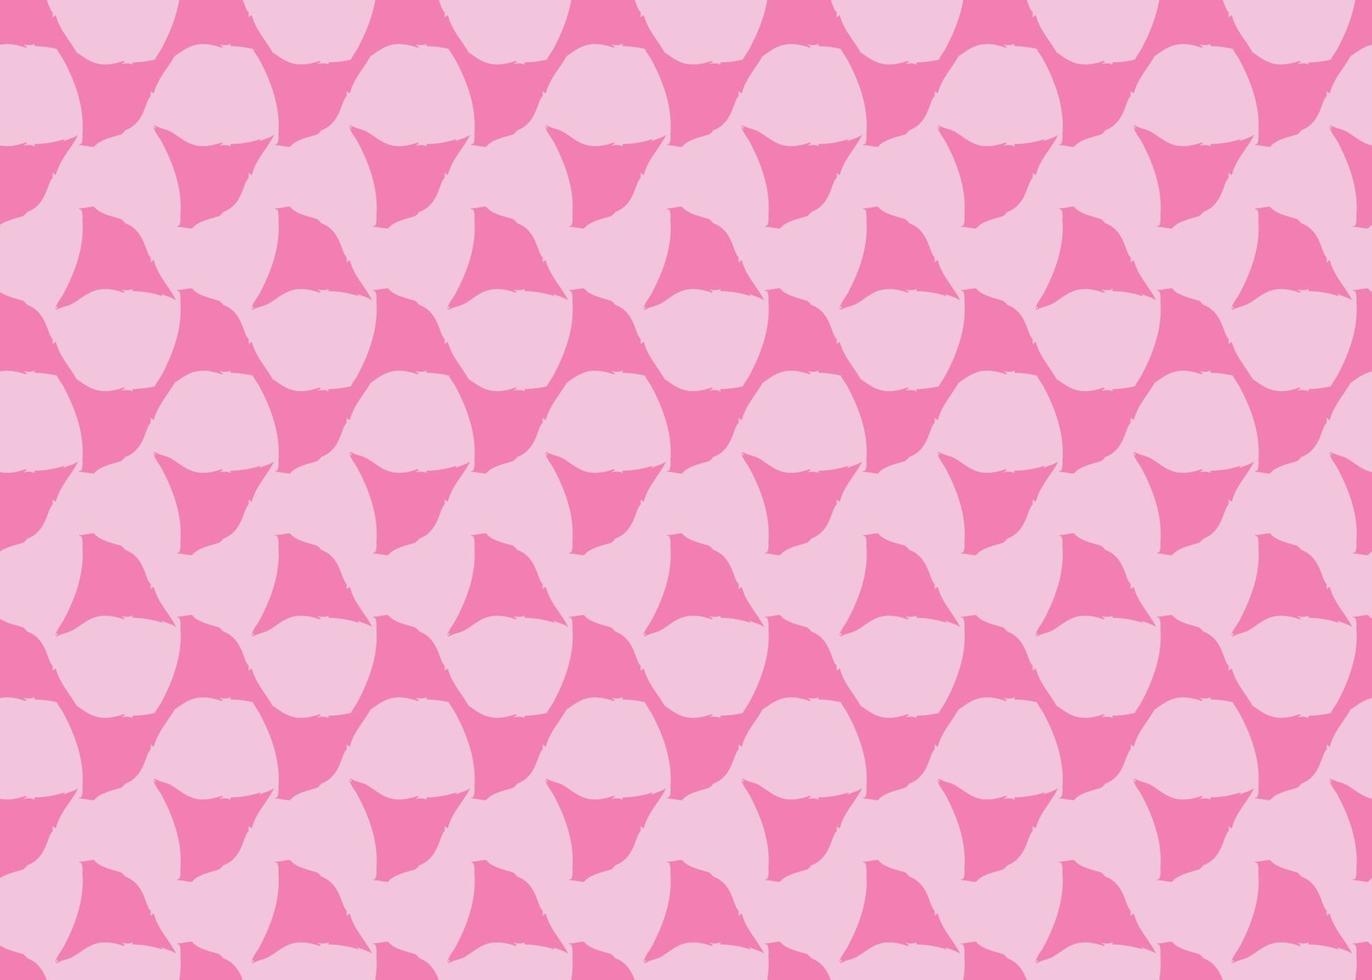 Vektor Textur Hintergrund, nahtloses Muster. handgezeichnet, rosa Farben.